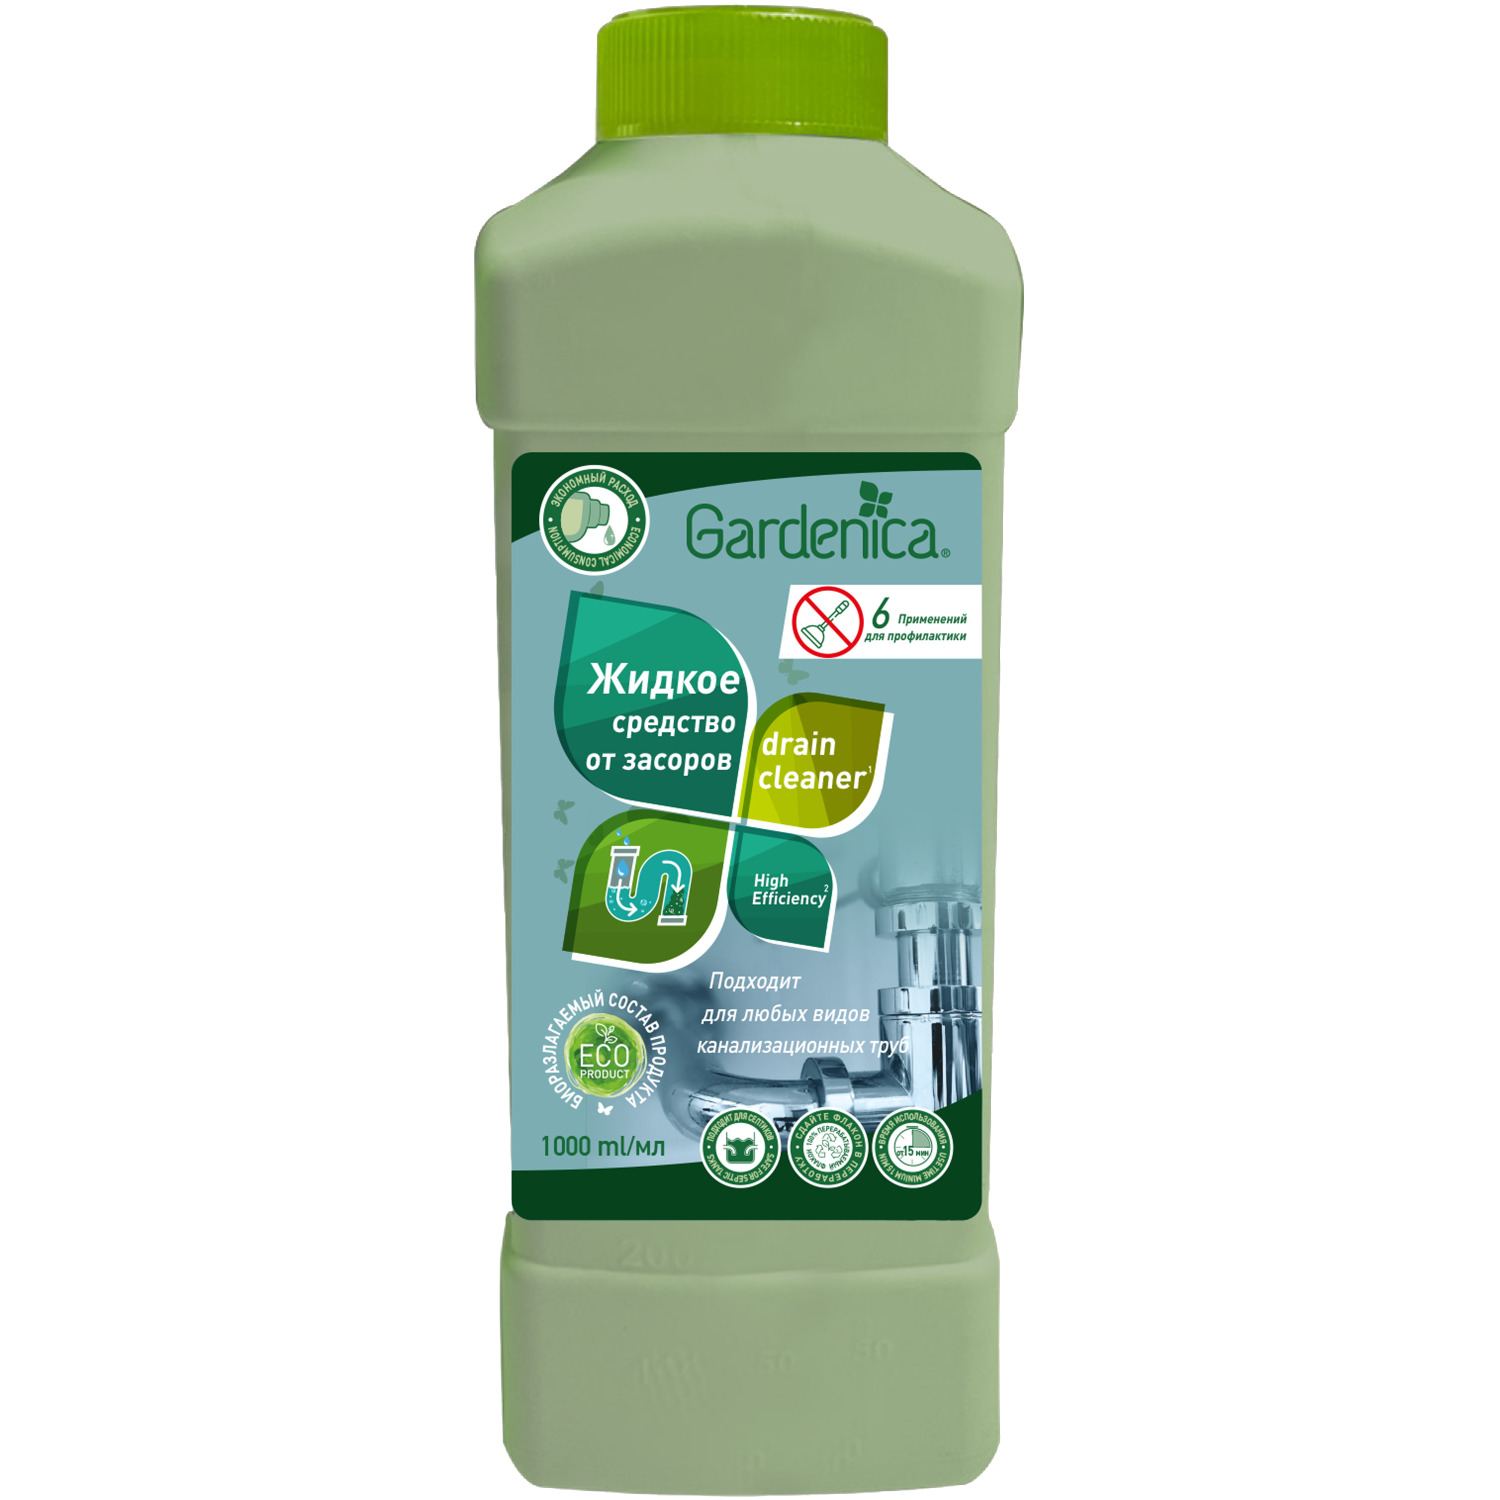 Экологичное средство Gardenica для устранения засоров и чистки труб 1 л средство для устранения засоров в трубах hg